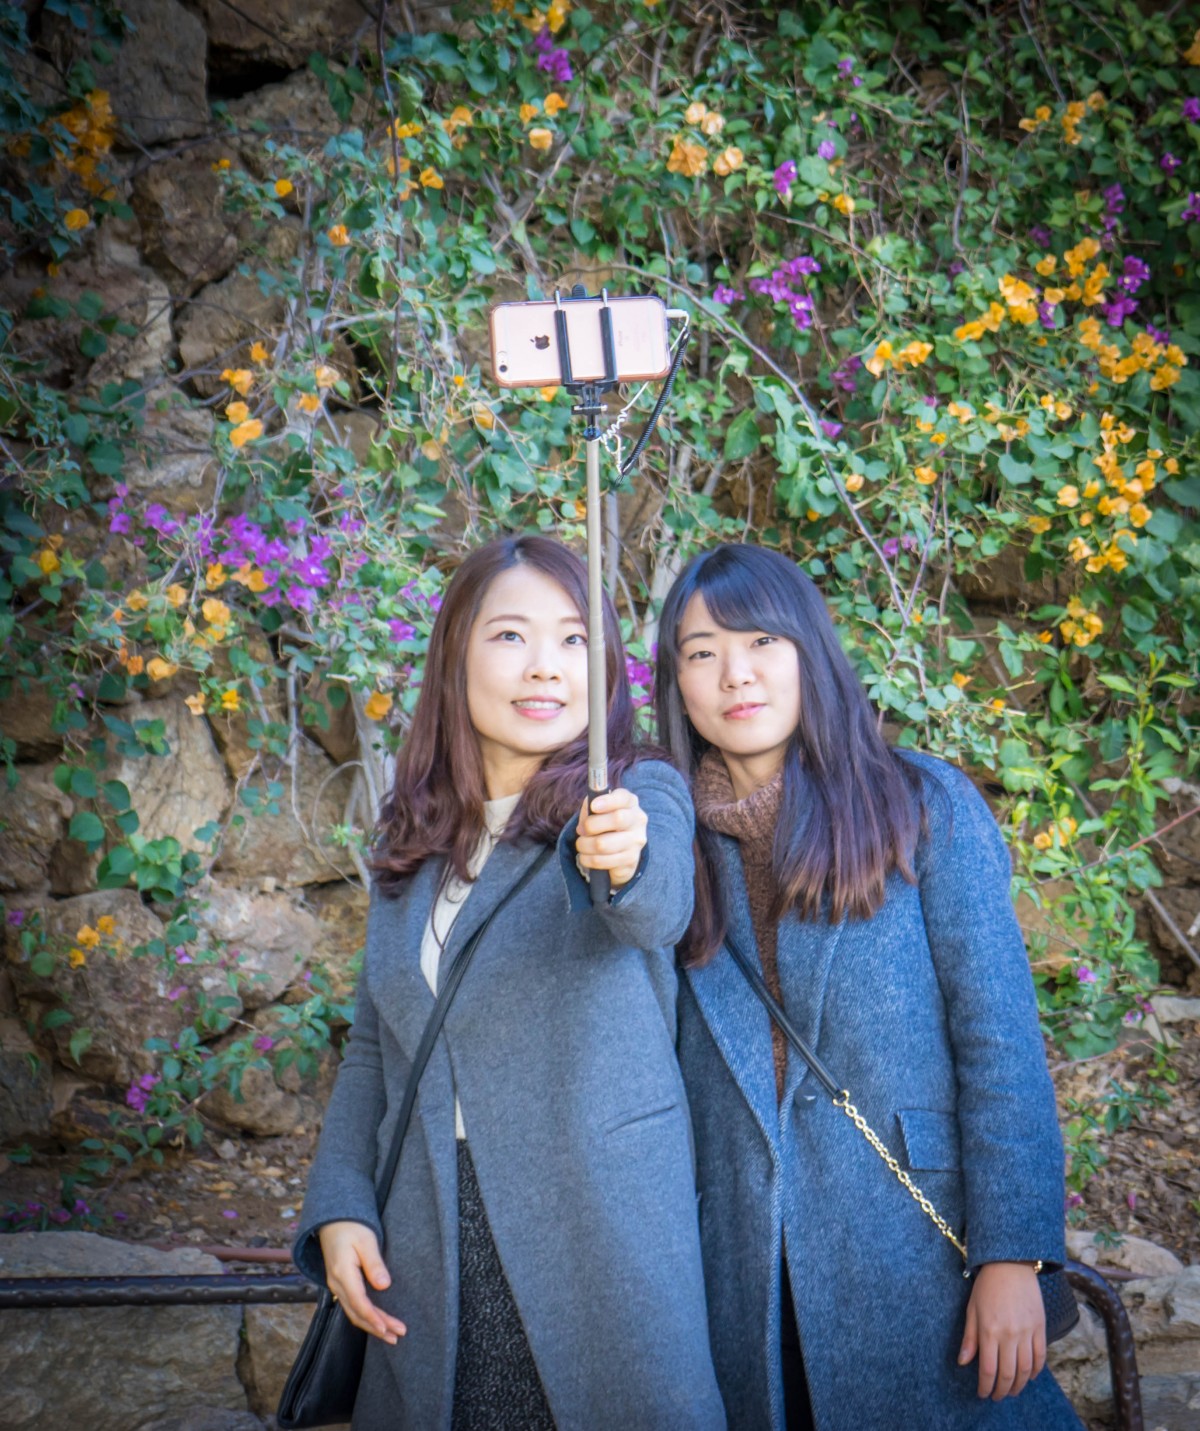 La imagen muestra a dos chicas de origen chino haciéndose un selfie.